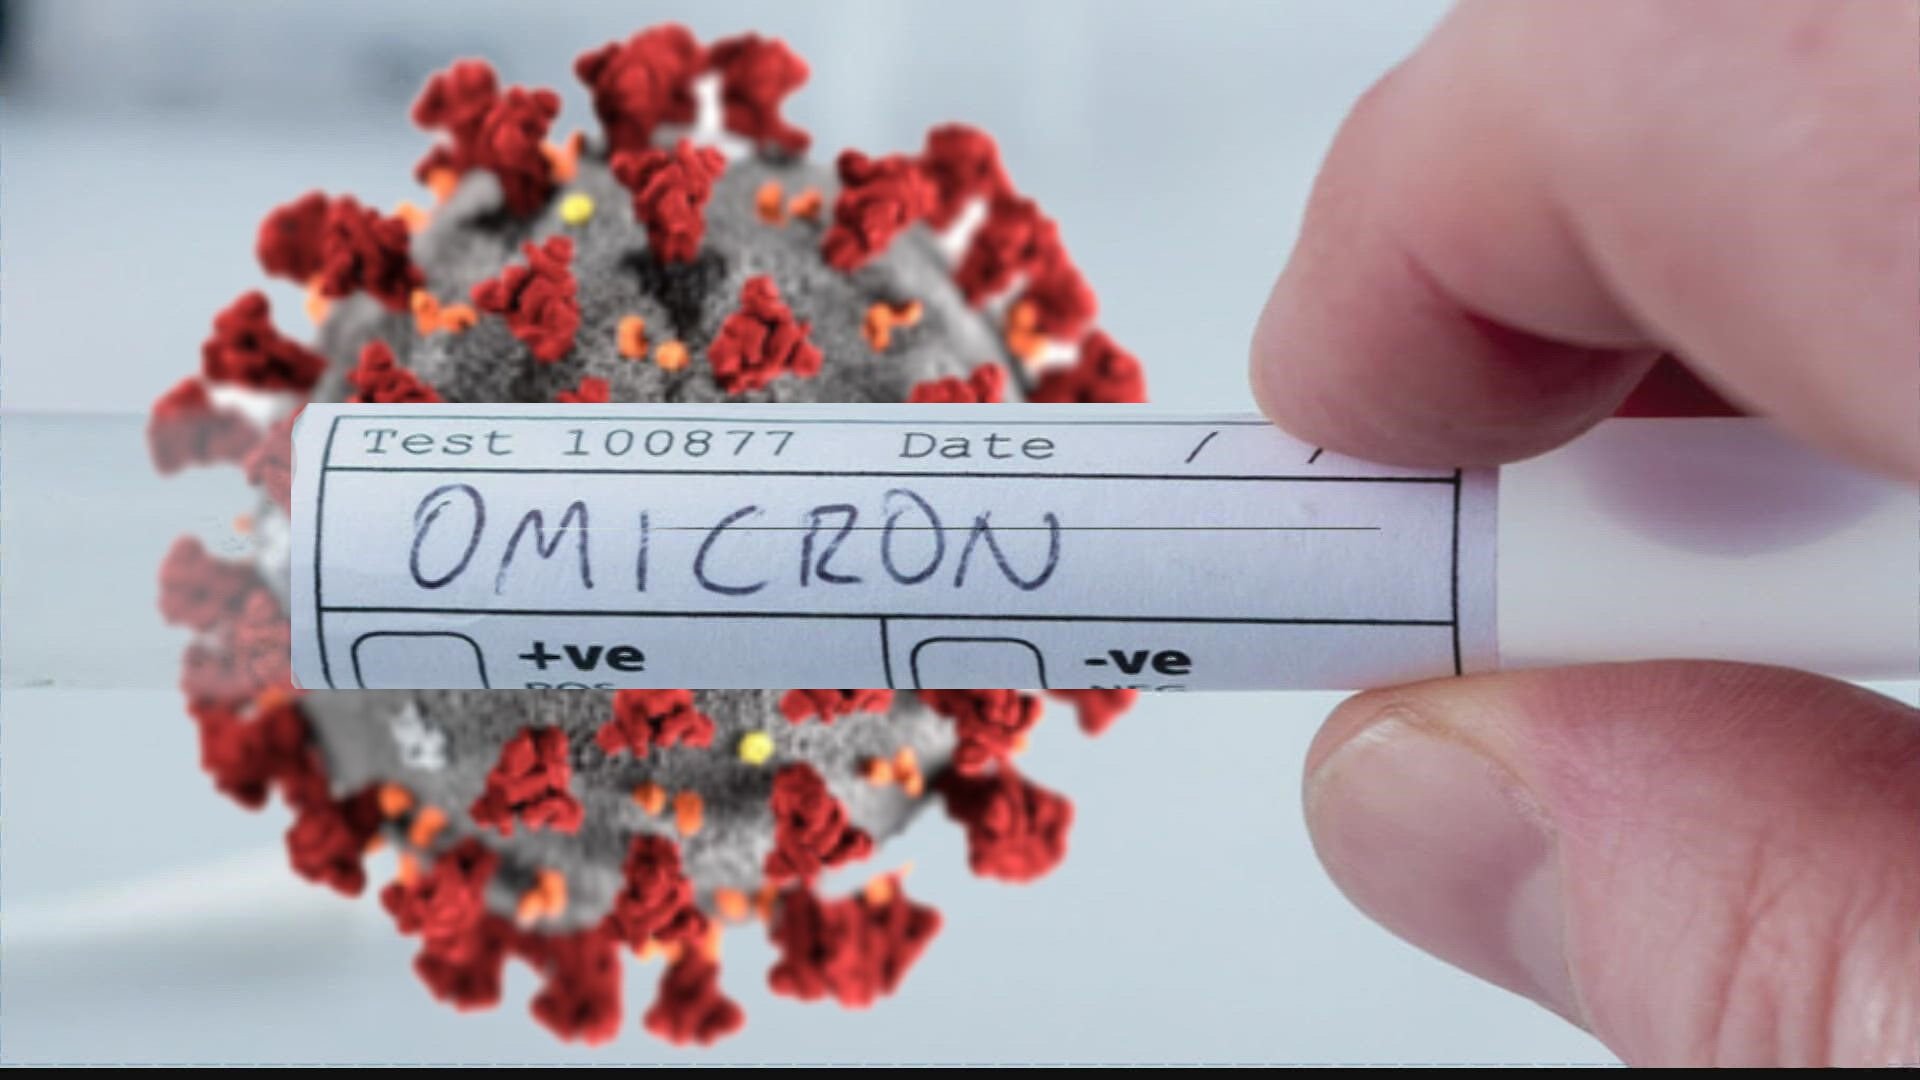 Rrezik i lartë: Studiuesit kanë zbuluar një lidhje midis Omicron dhe HIV